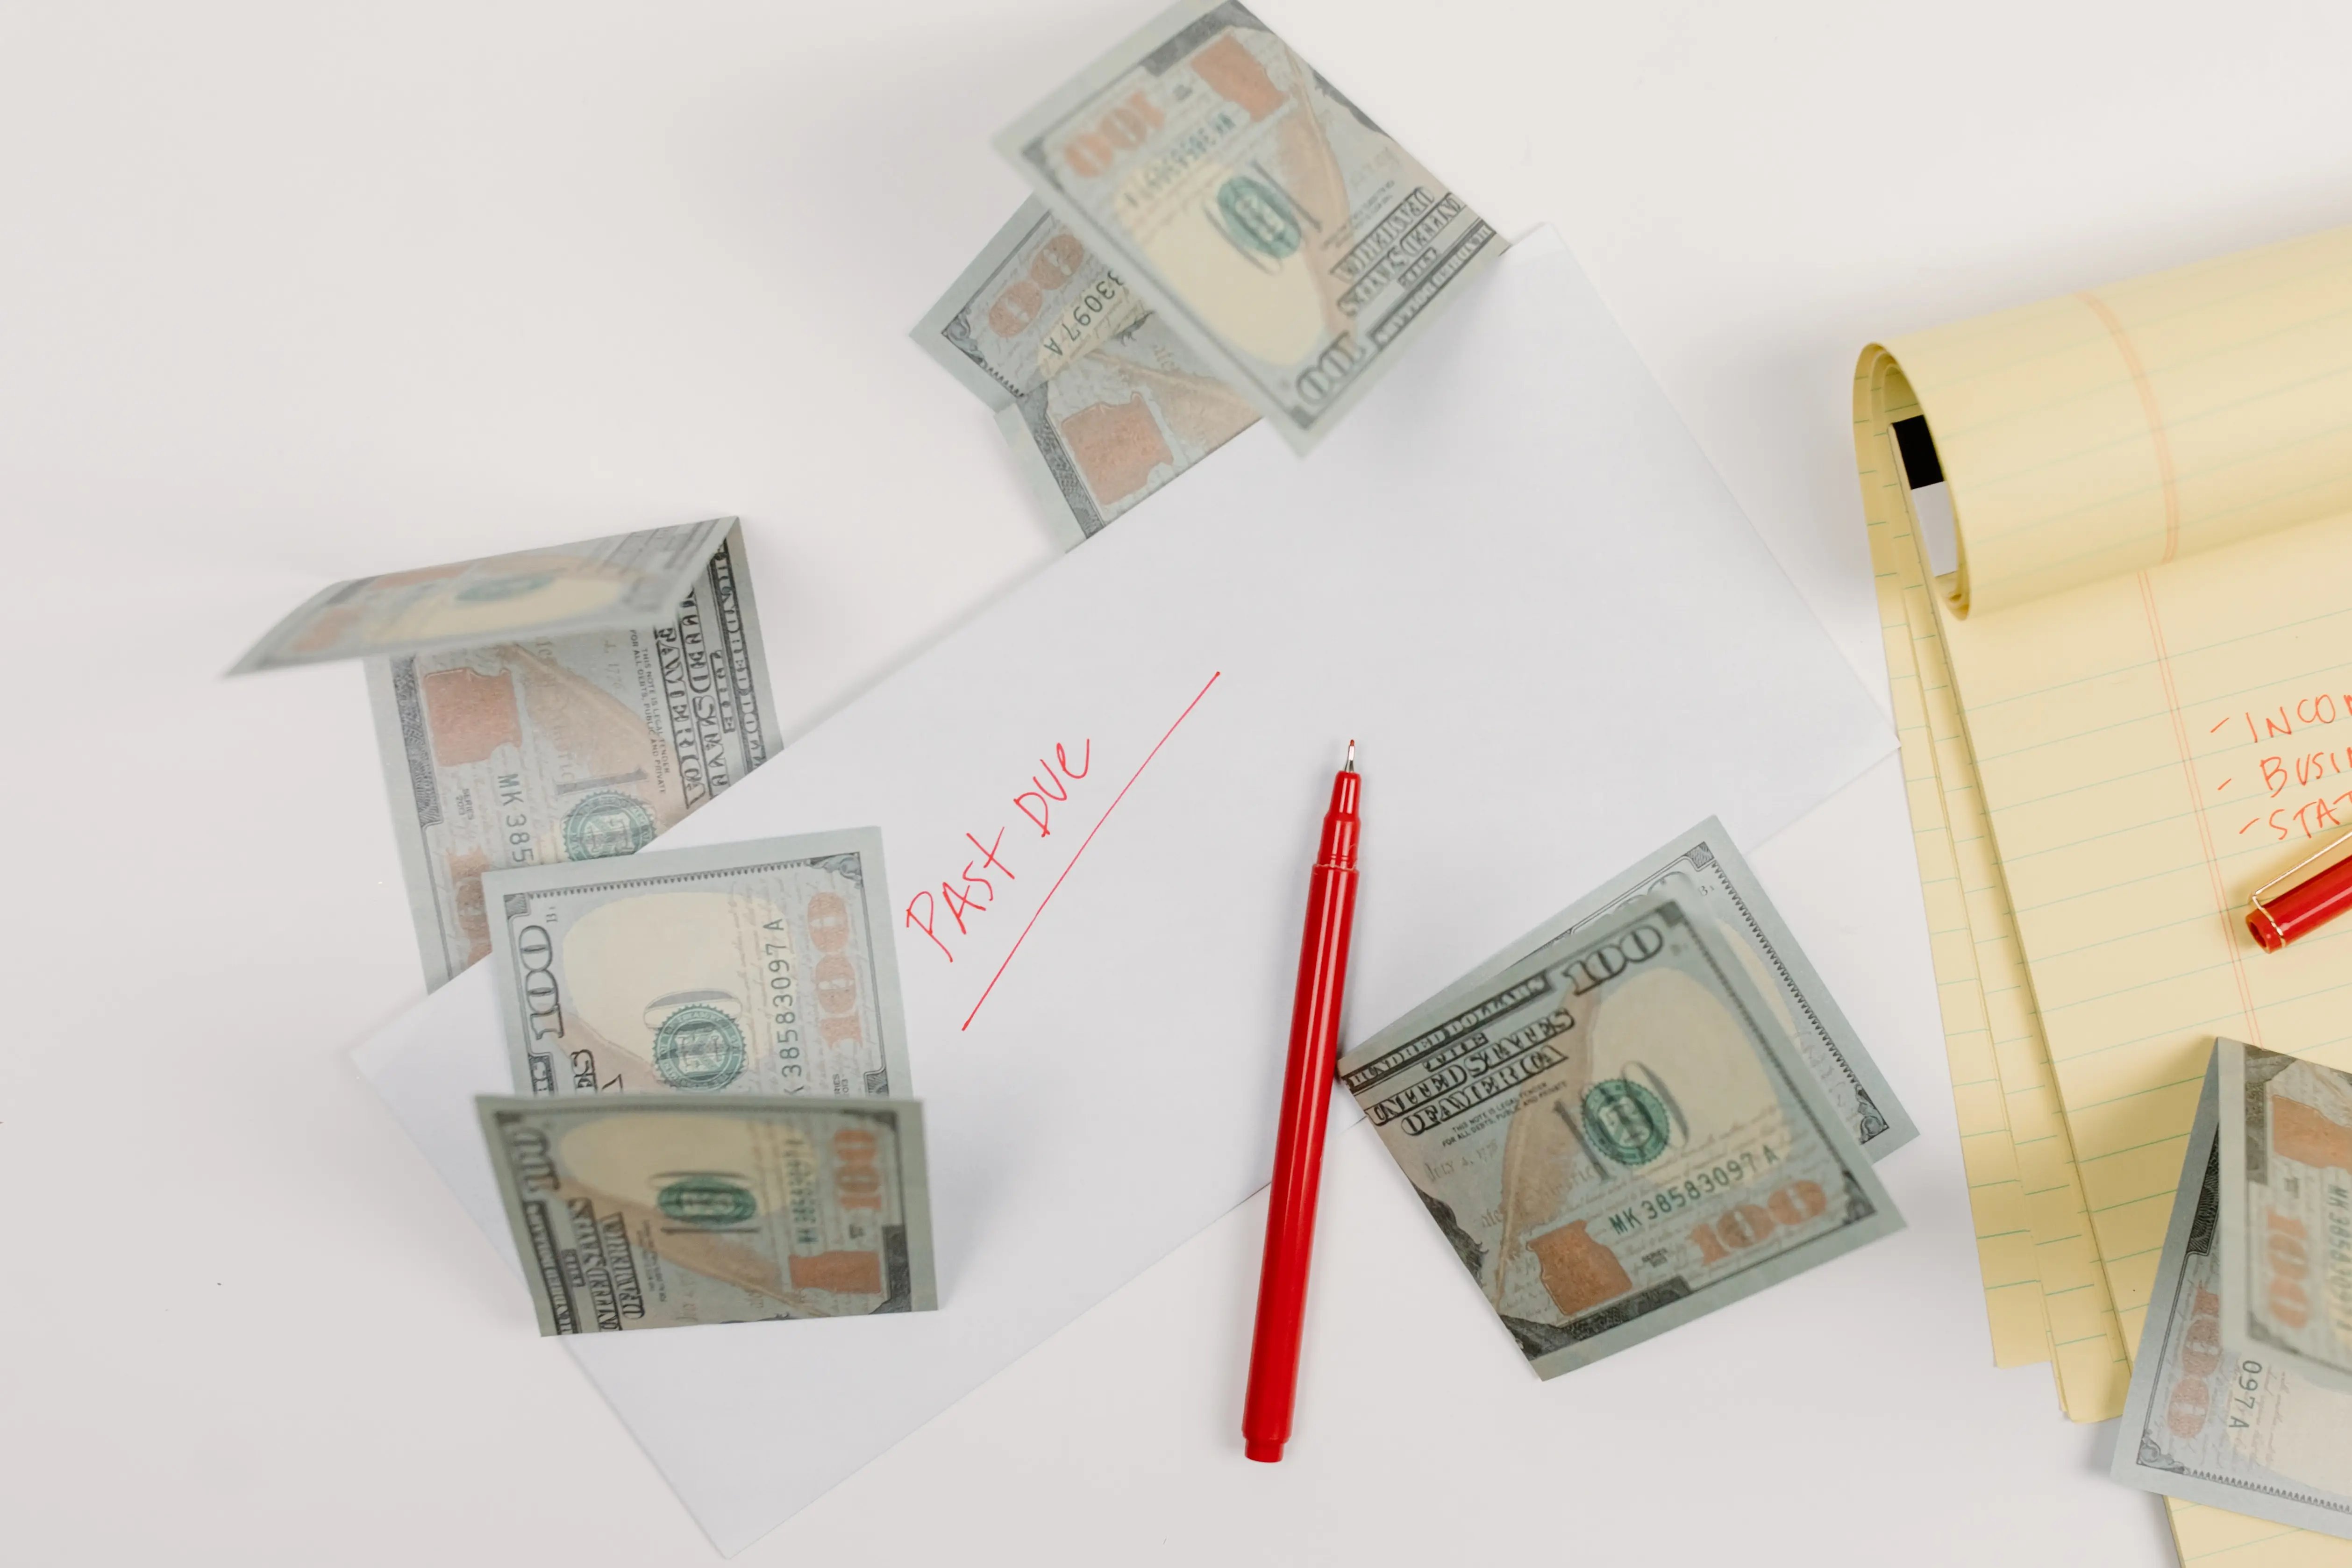 Photo de Tara Winstead représentant des billets de $100 utilisés pour payer des factures et placés dans une enveloppe comportant la mention "Past Due"